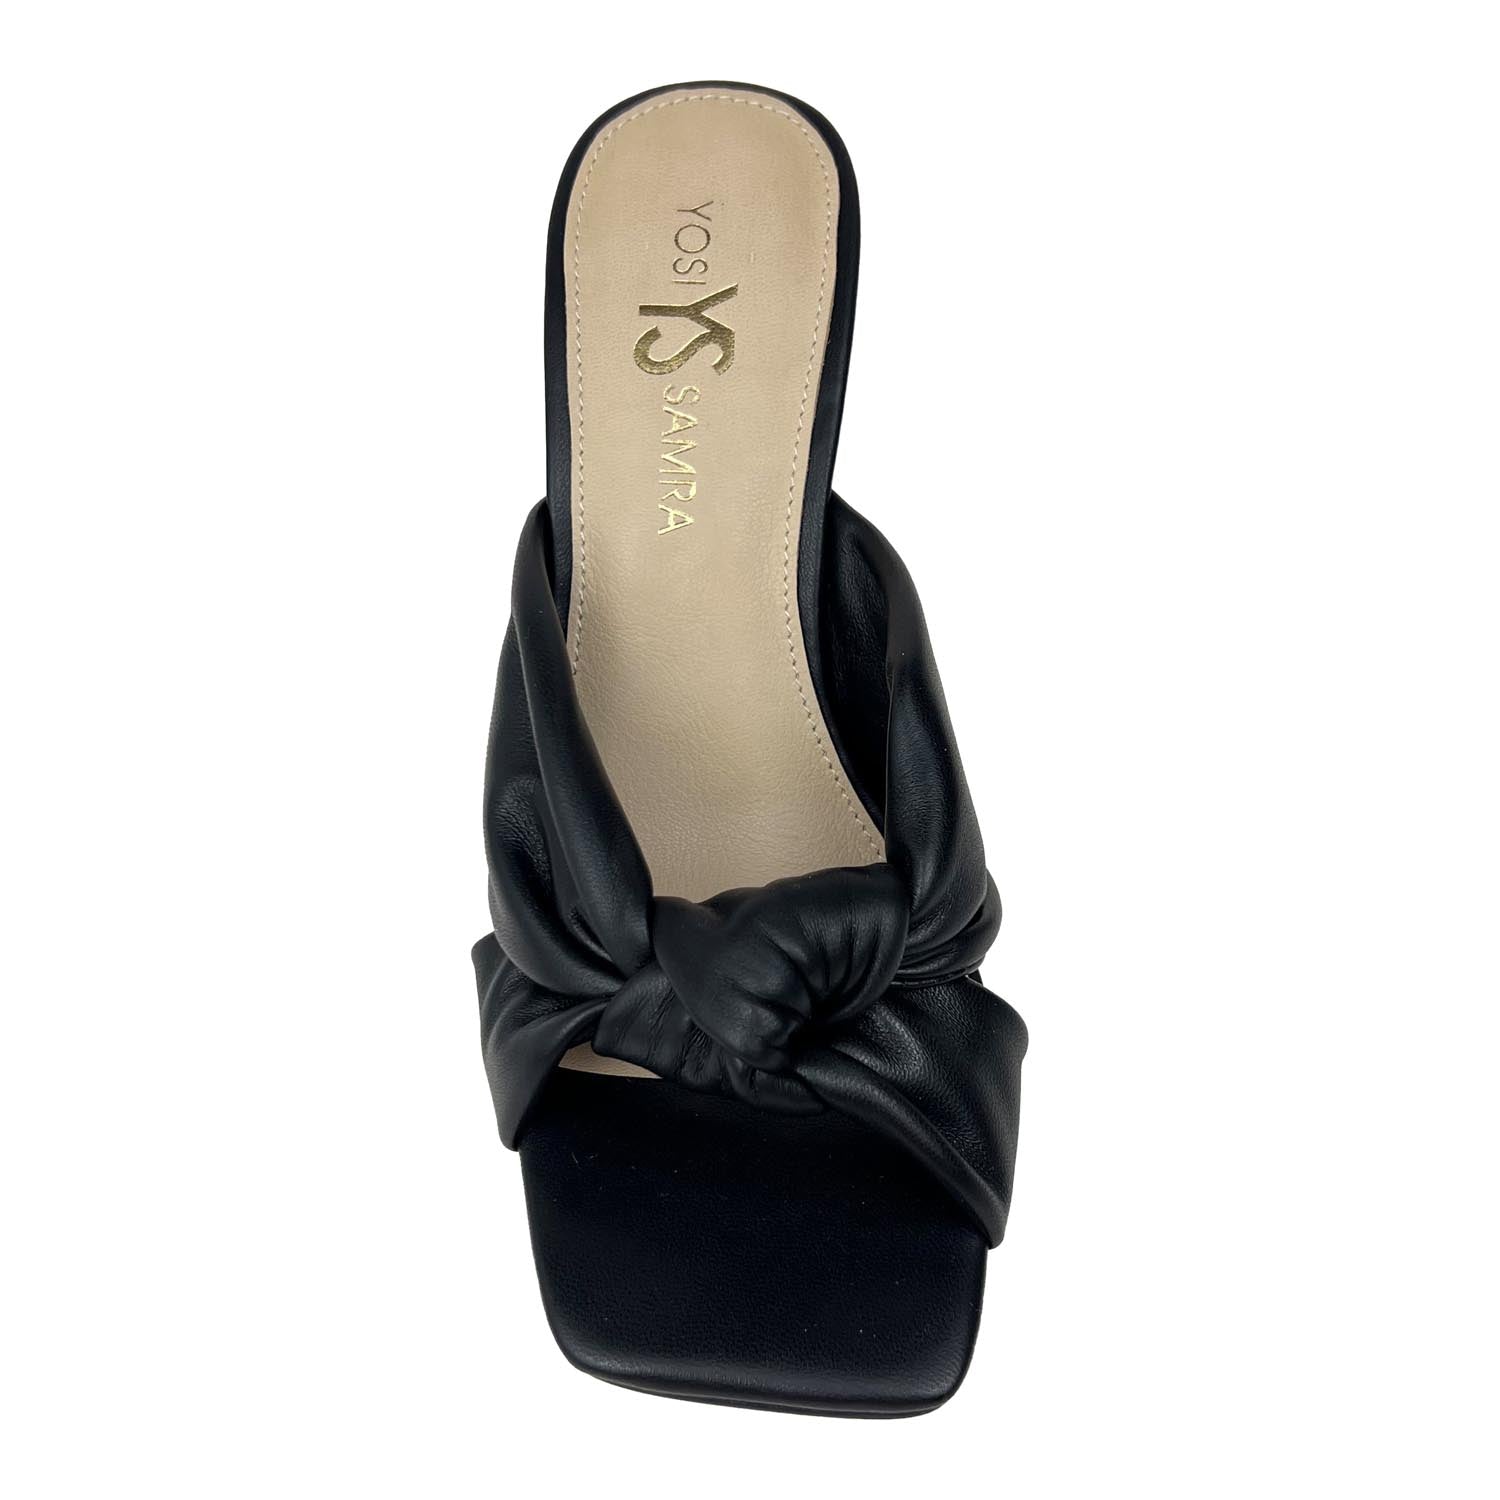 Hazel Knotted Dress Sandal in Black Leather